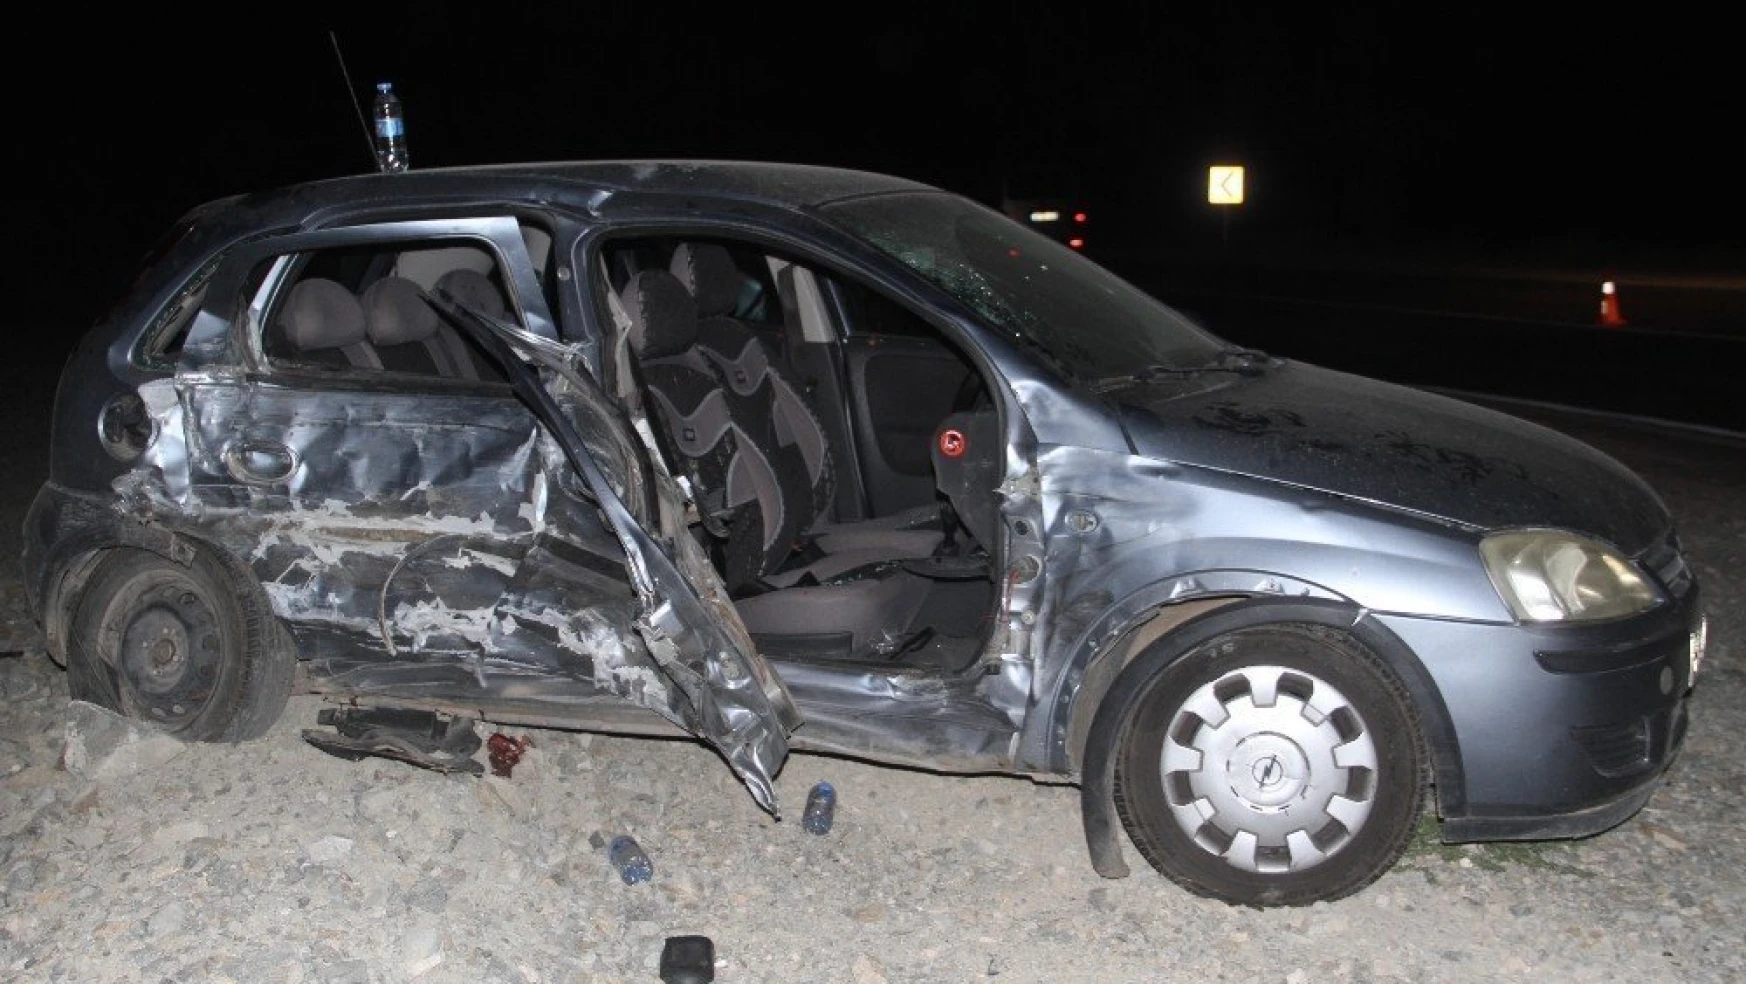 Elazığ Pertek Yolunda Trafik Kazası, 4 Kişi Yaralandı